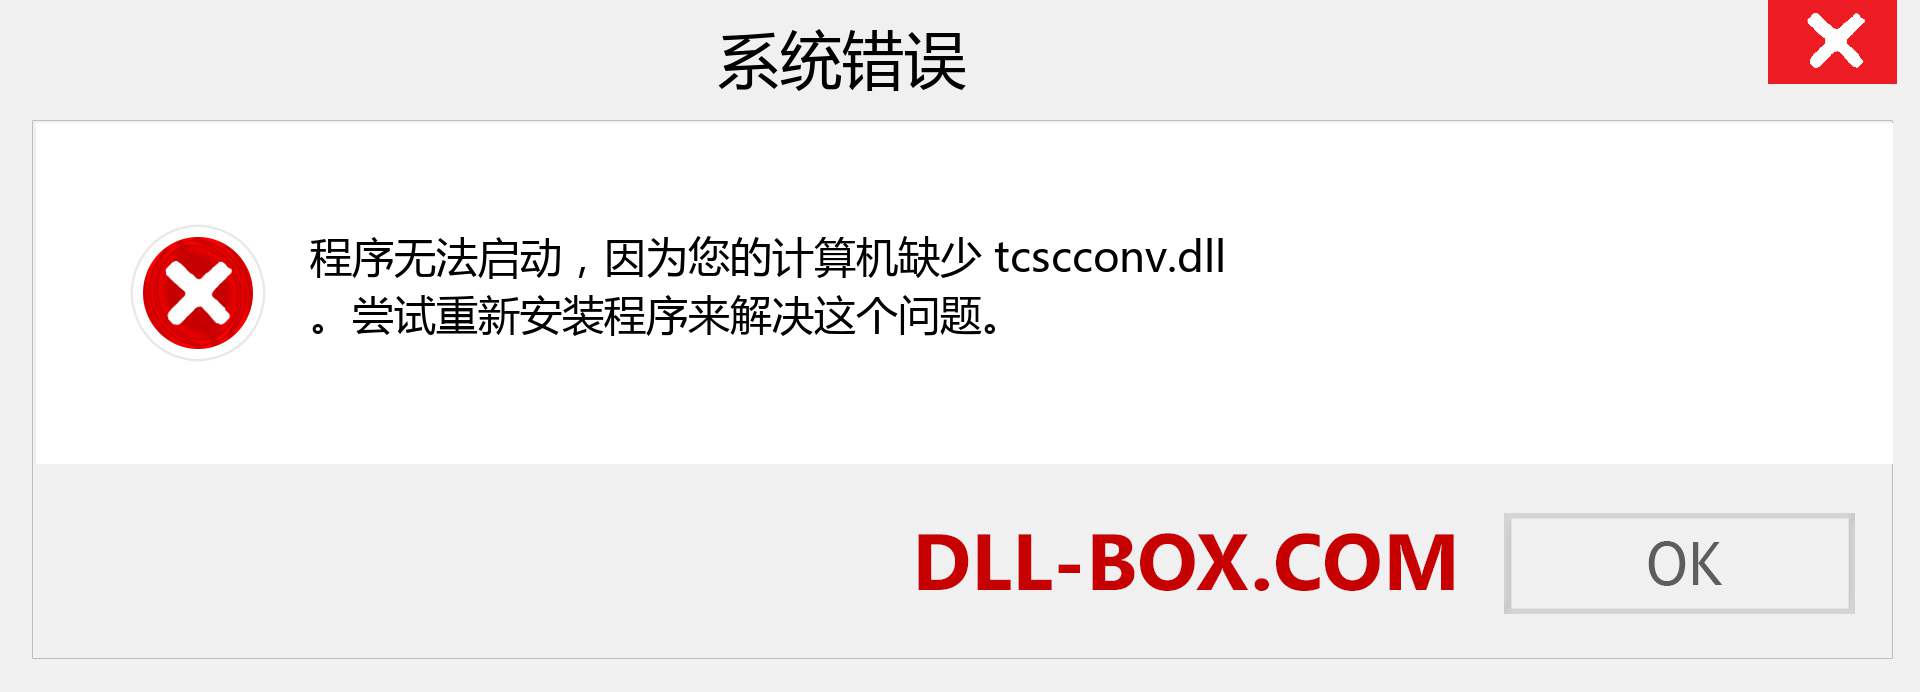 tcscconv.dll 文件丢失？。 适用于 Windows 7、8、10 的下载 - 修复 Windows、照片、图像上的 tcscconv dll 丢失错误